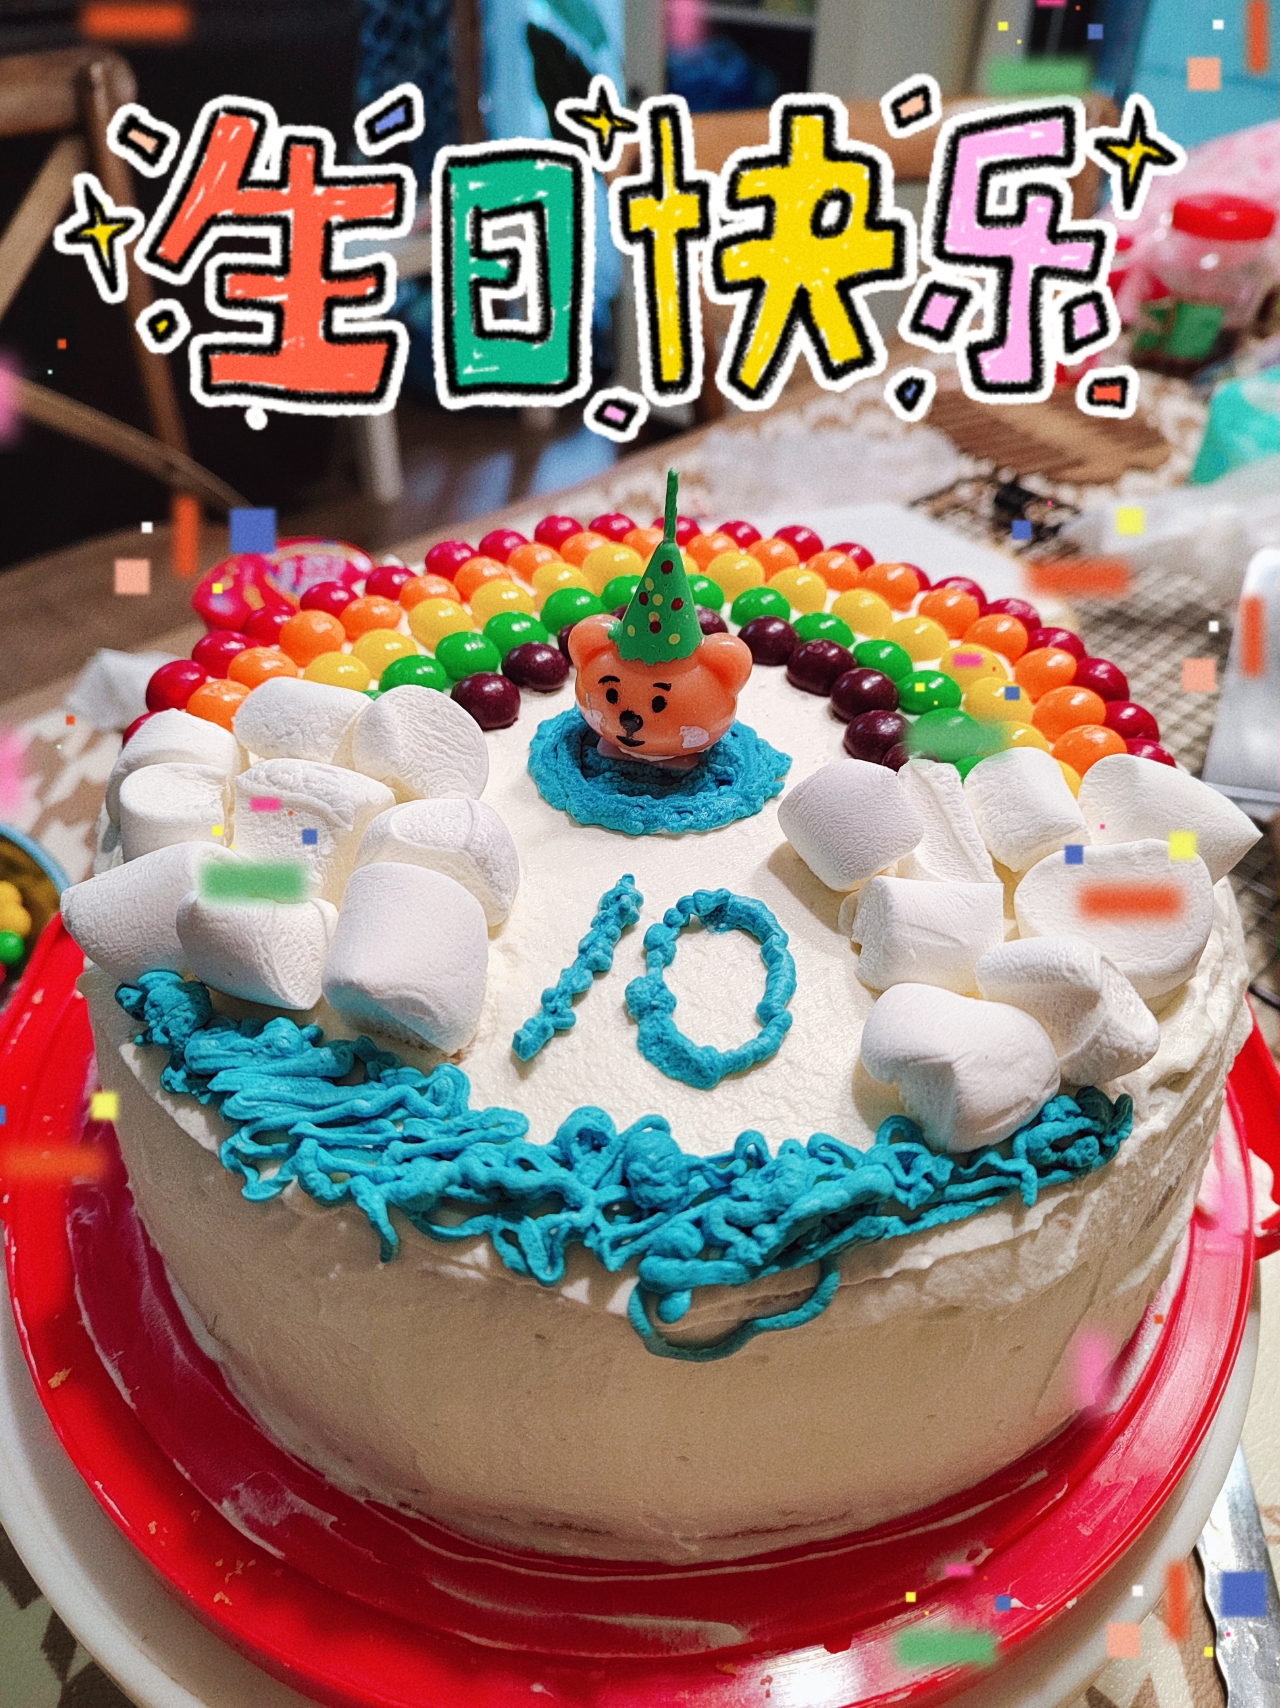 【搬运合集】儿童生日主题蛋糕装饰图🎂蛋糕灵感图